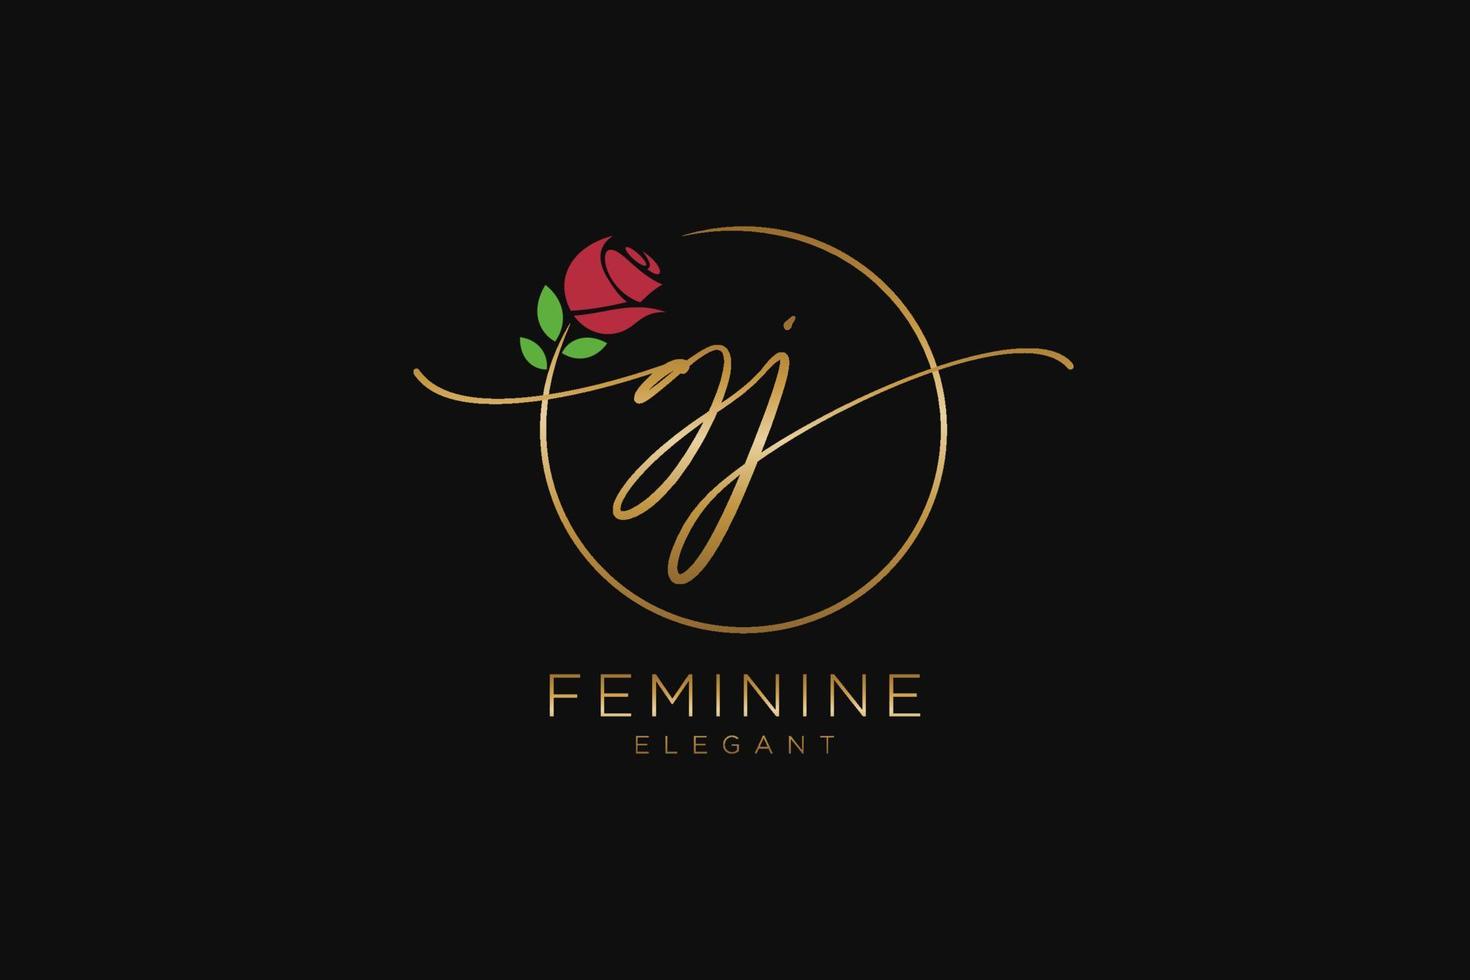 monogramme de beauté du logo féminin initial gj et design élégant du logo, logo manuscrit de la signature initiale, mariage, mode, floral et botanique avec modèle créatif. vecteur